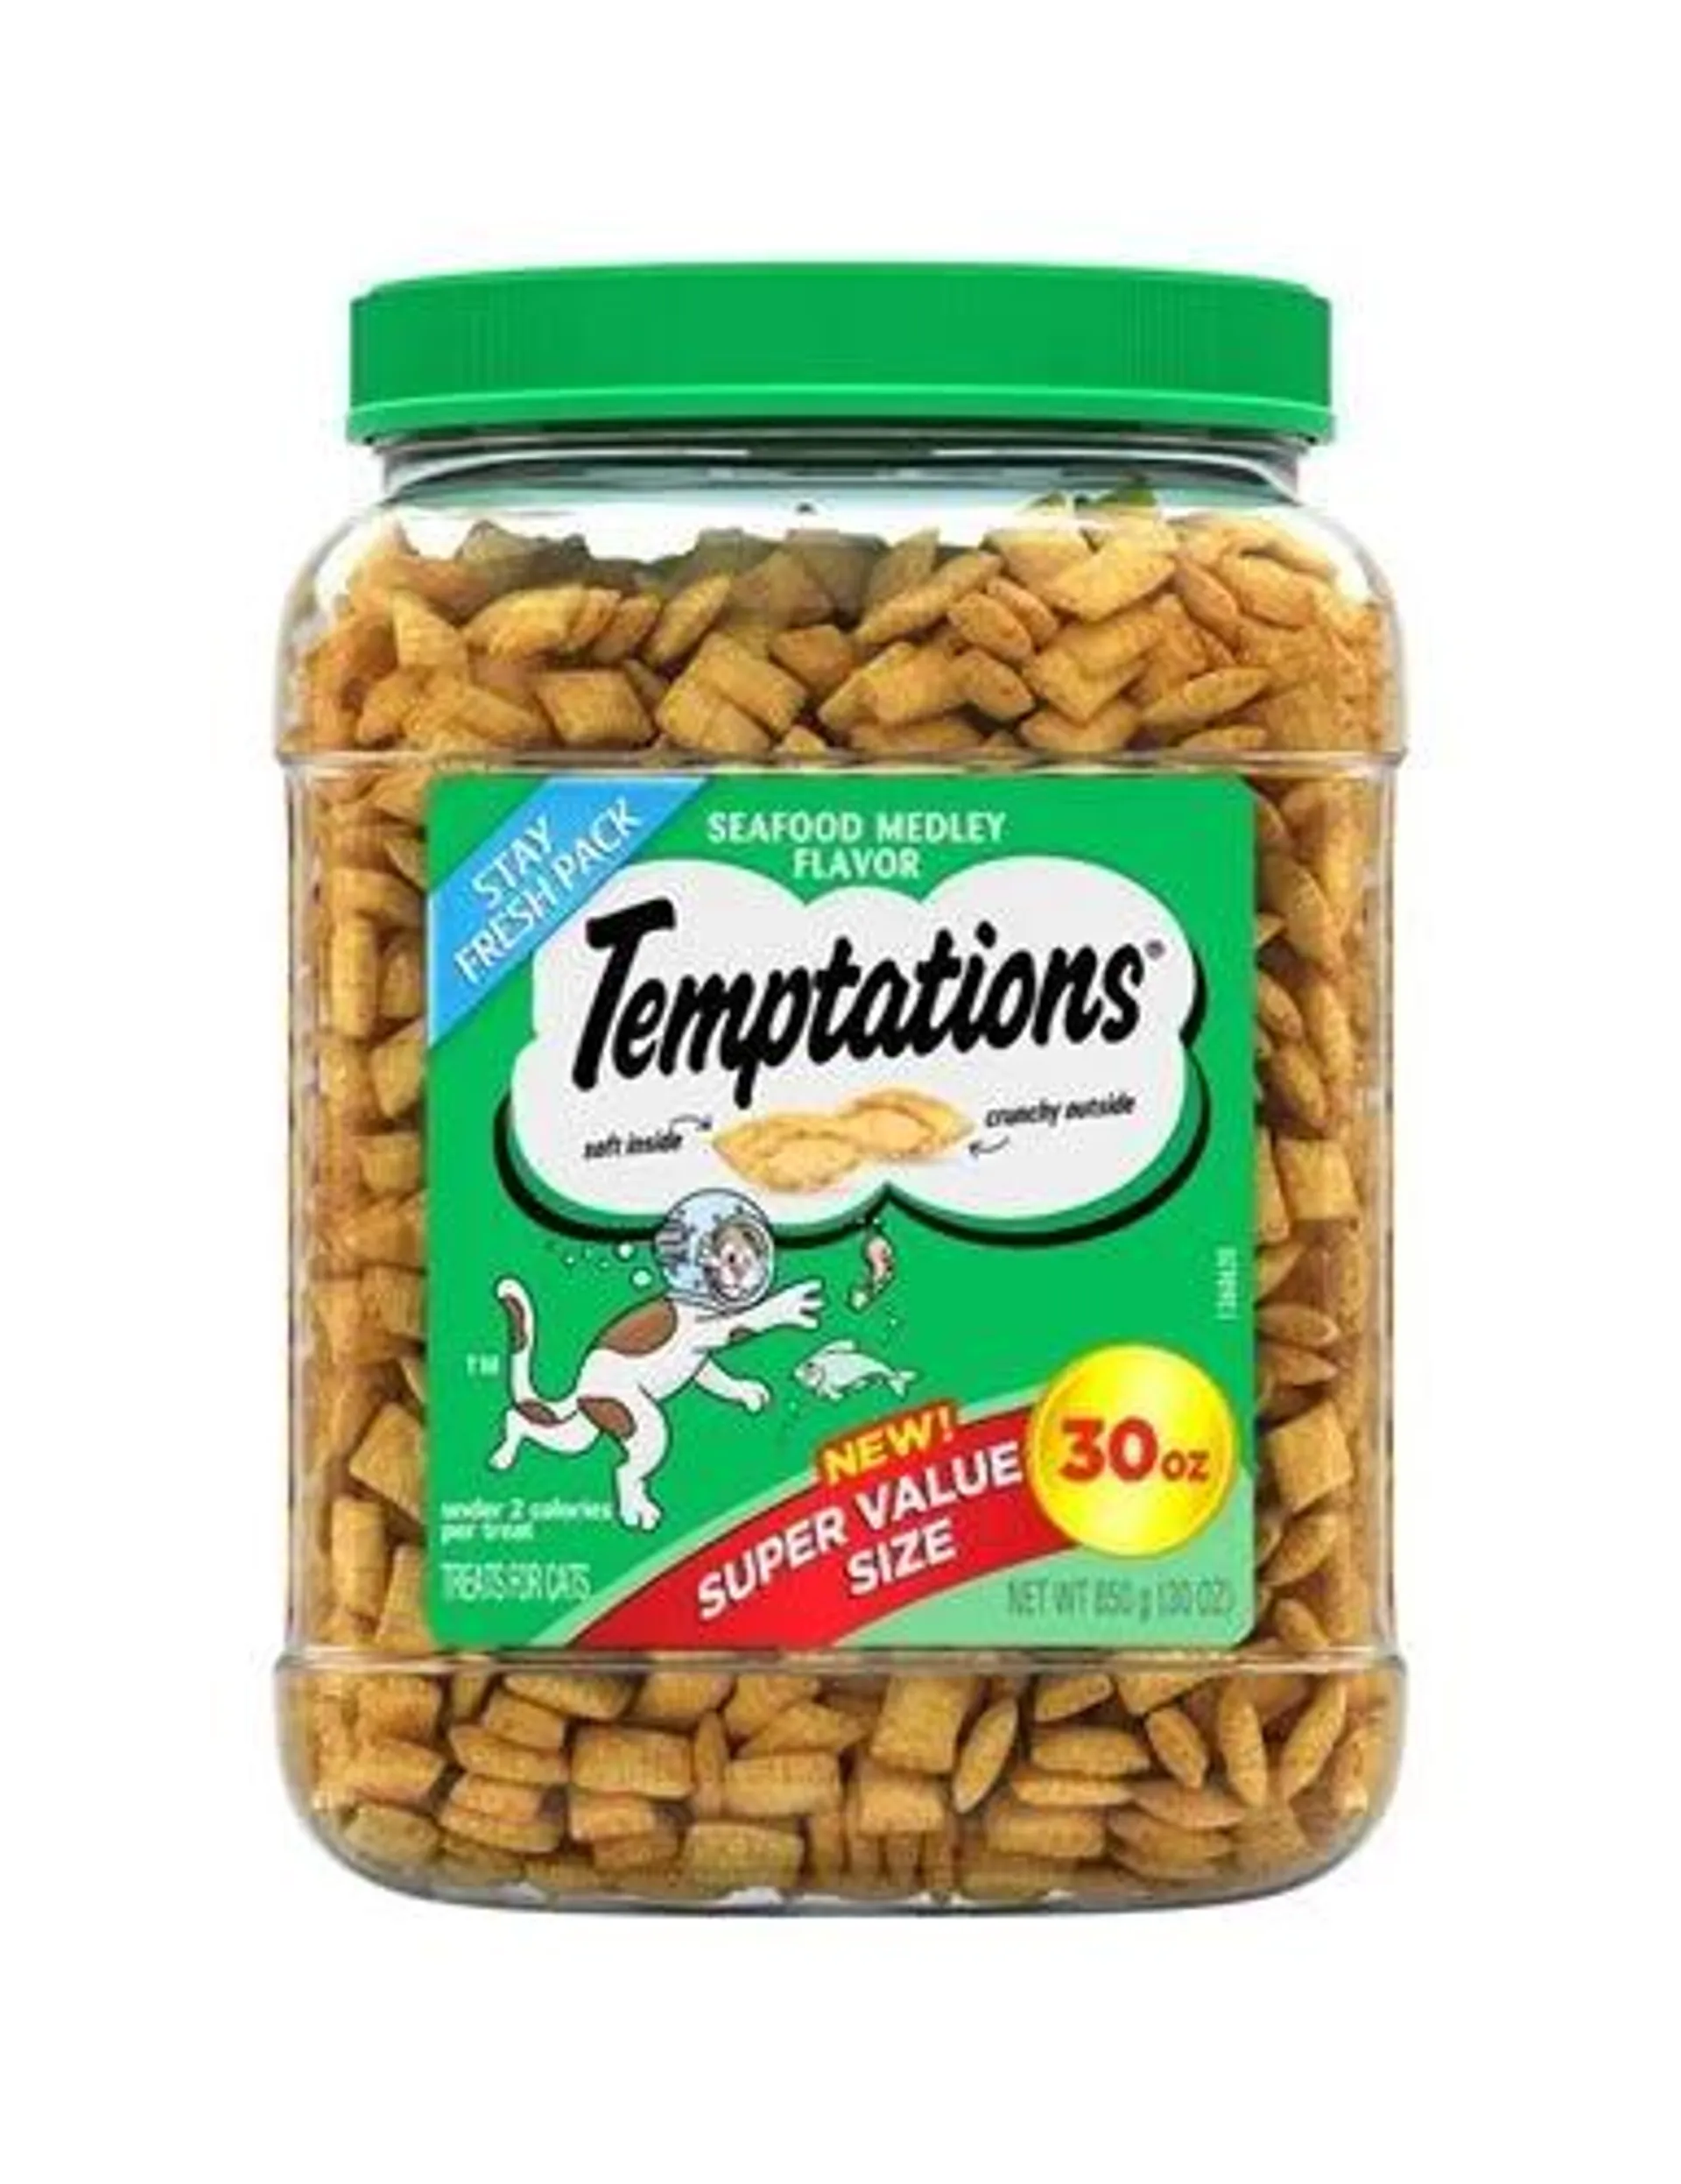 Temptations Classic Treats for Cats Seafood Medley Flavor, 30 Ounces